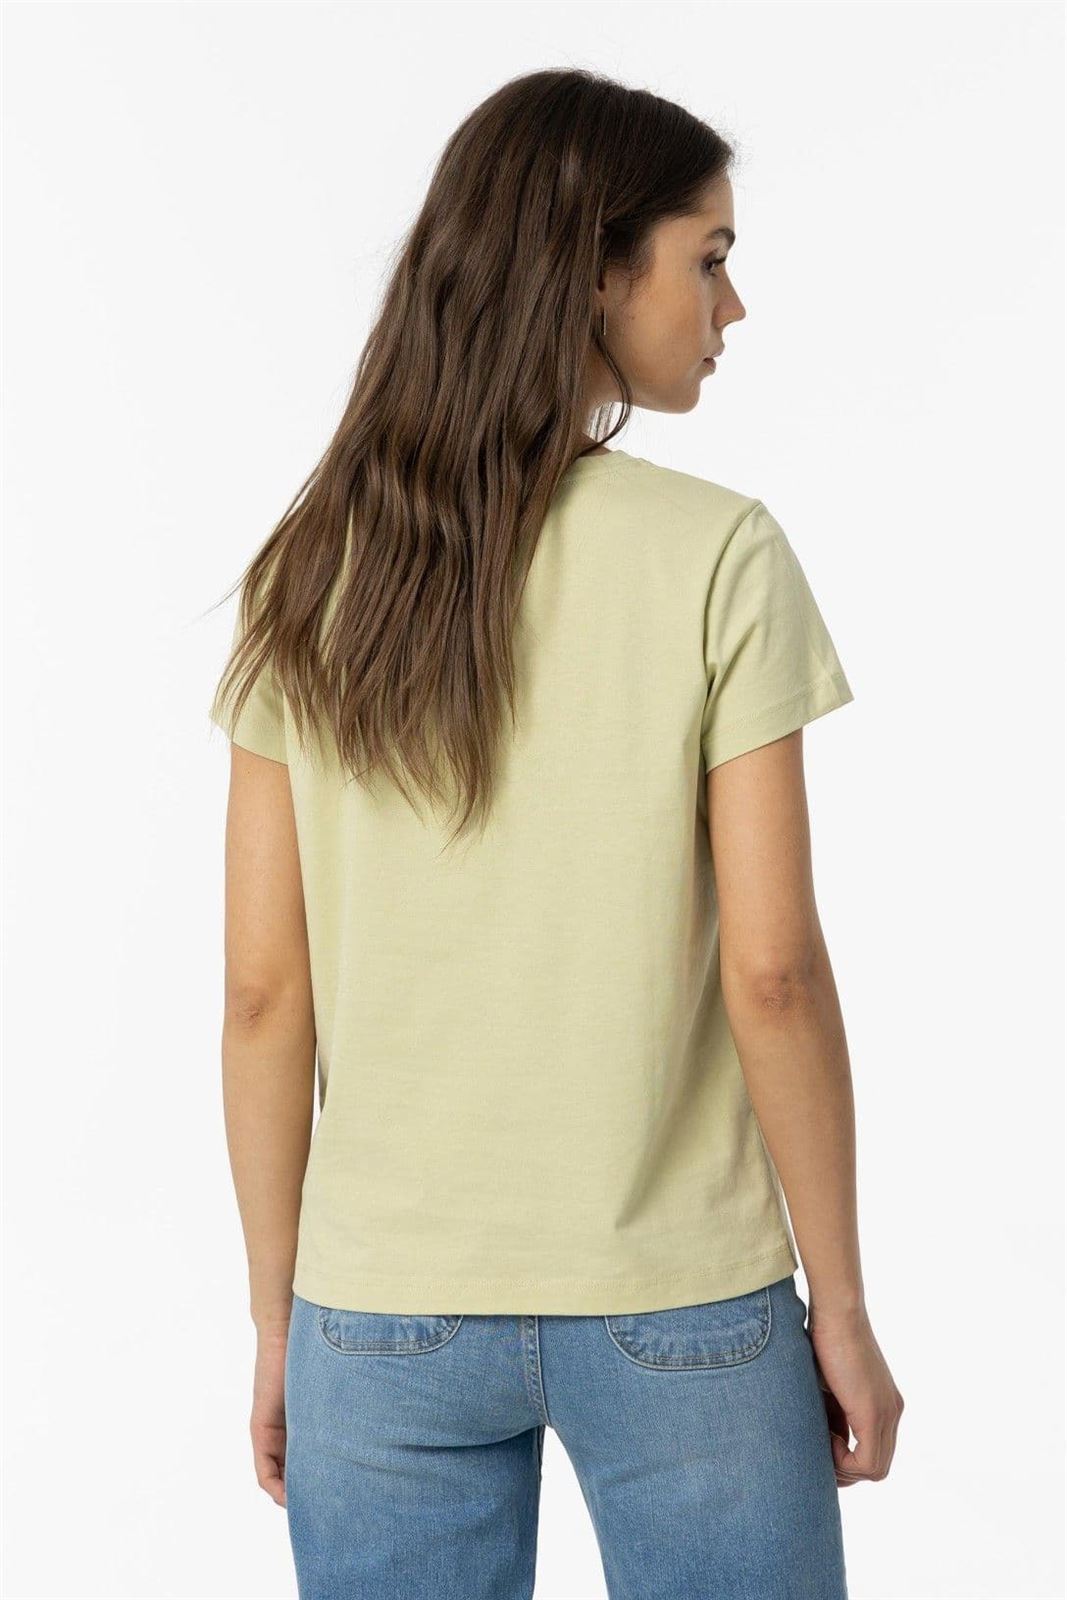 Camiseta verde letras y perlas, Pareia - Imagen 3